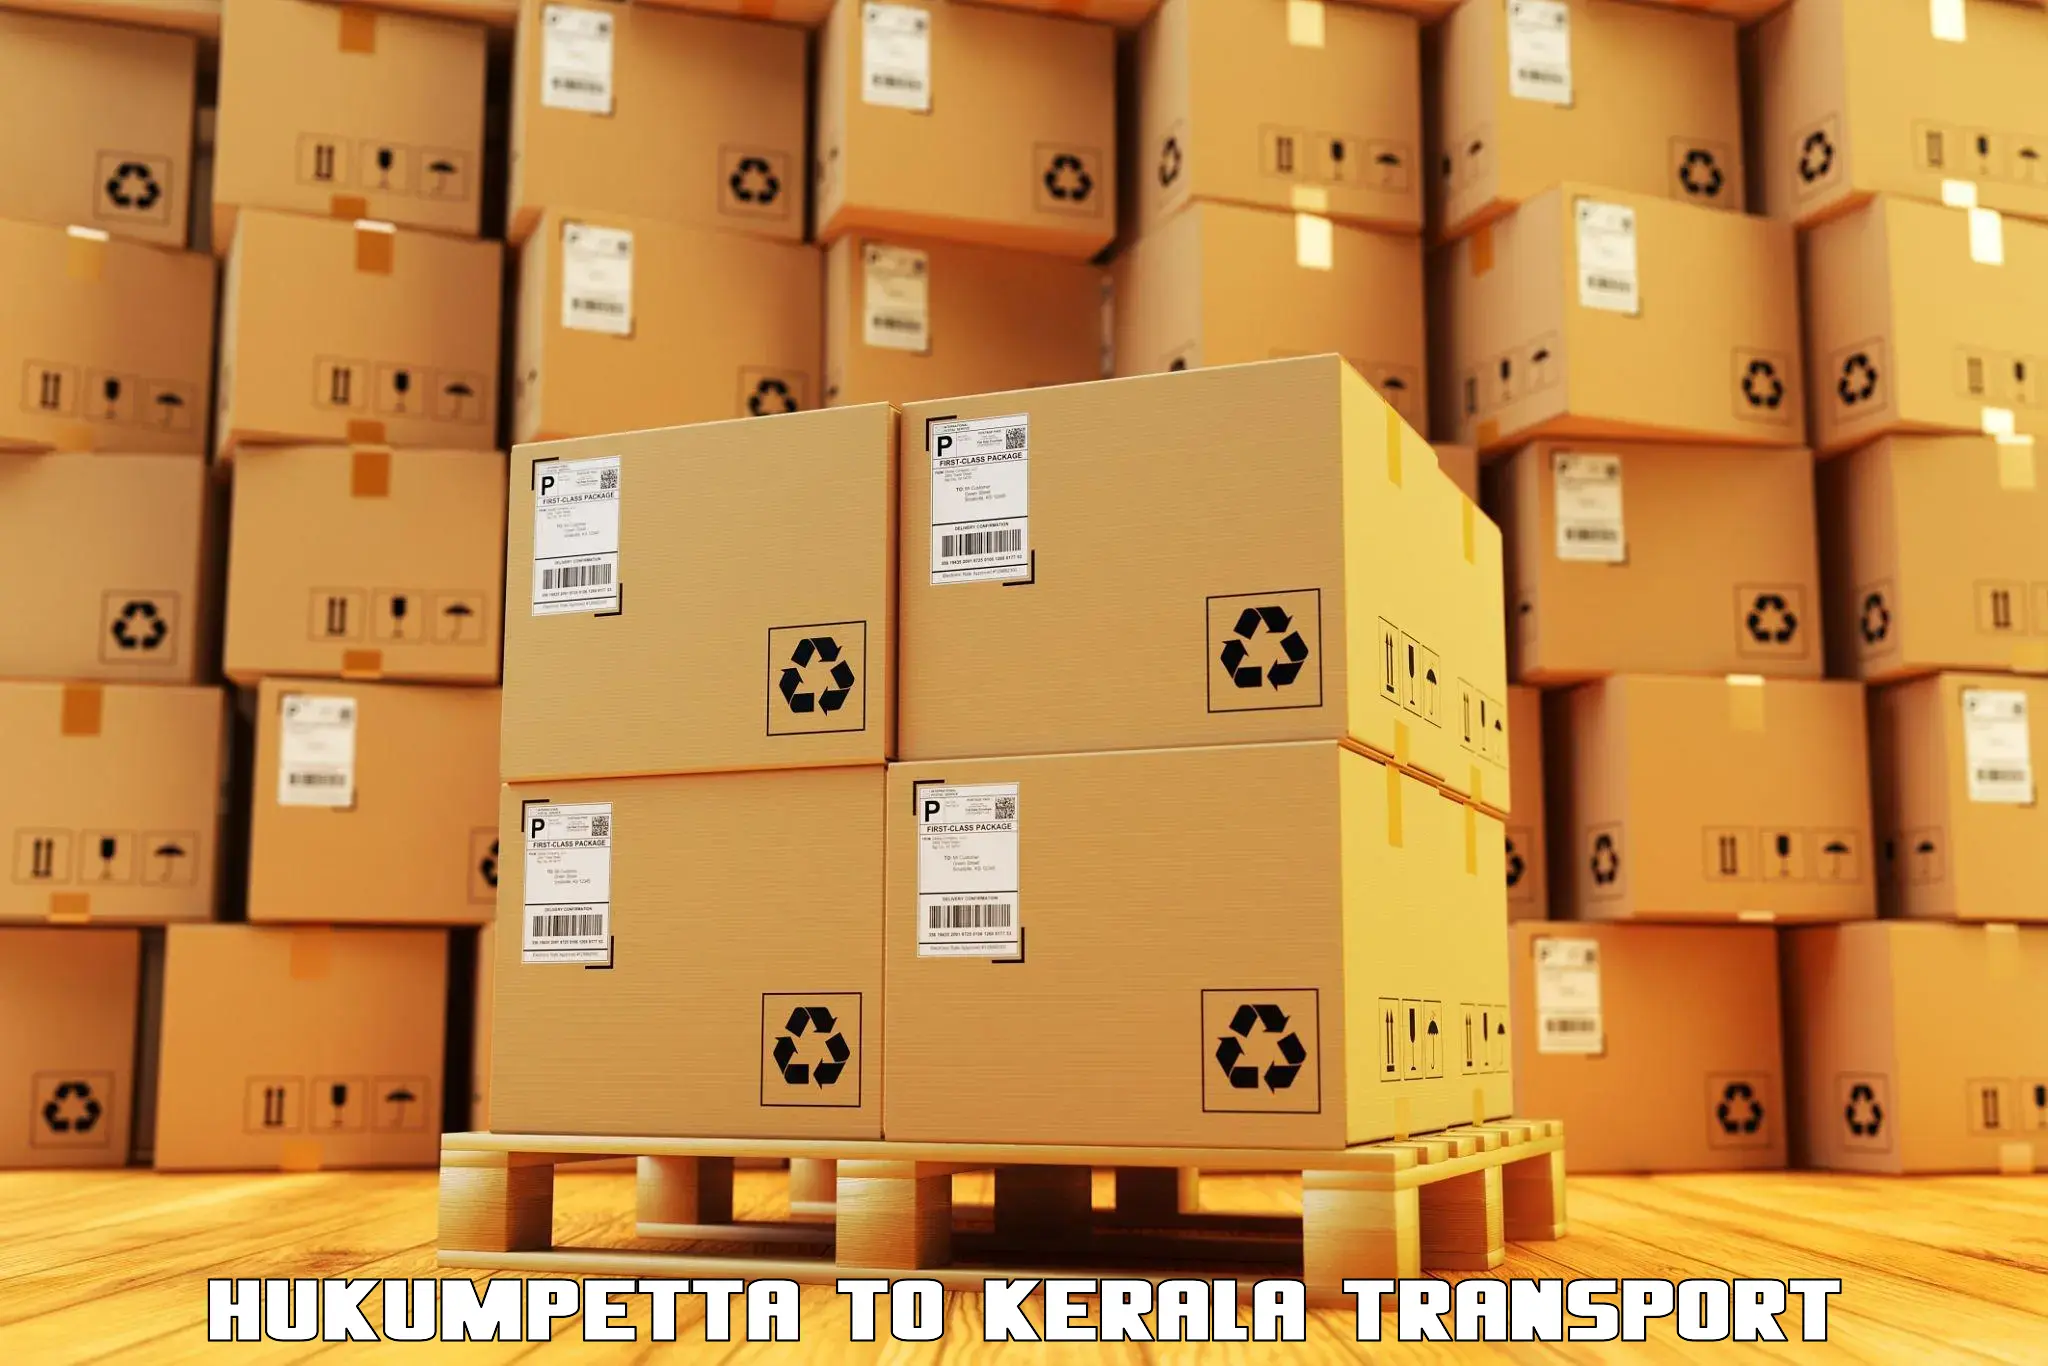 Pick up transport service Hukumpetta to Taliparamba